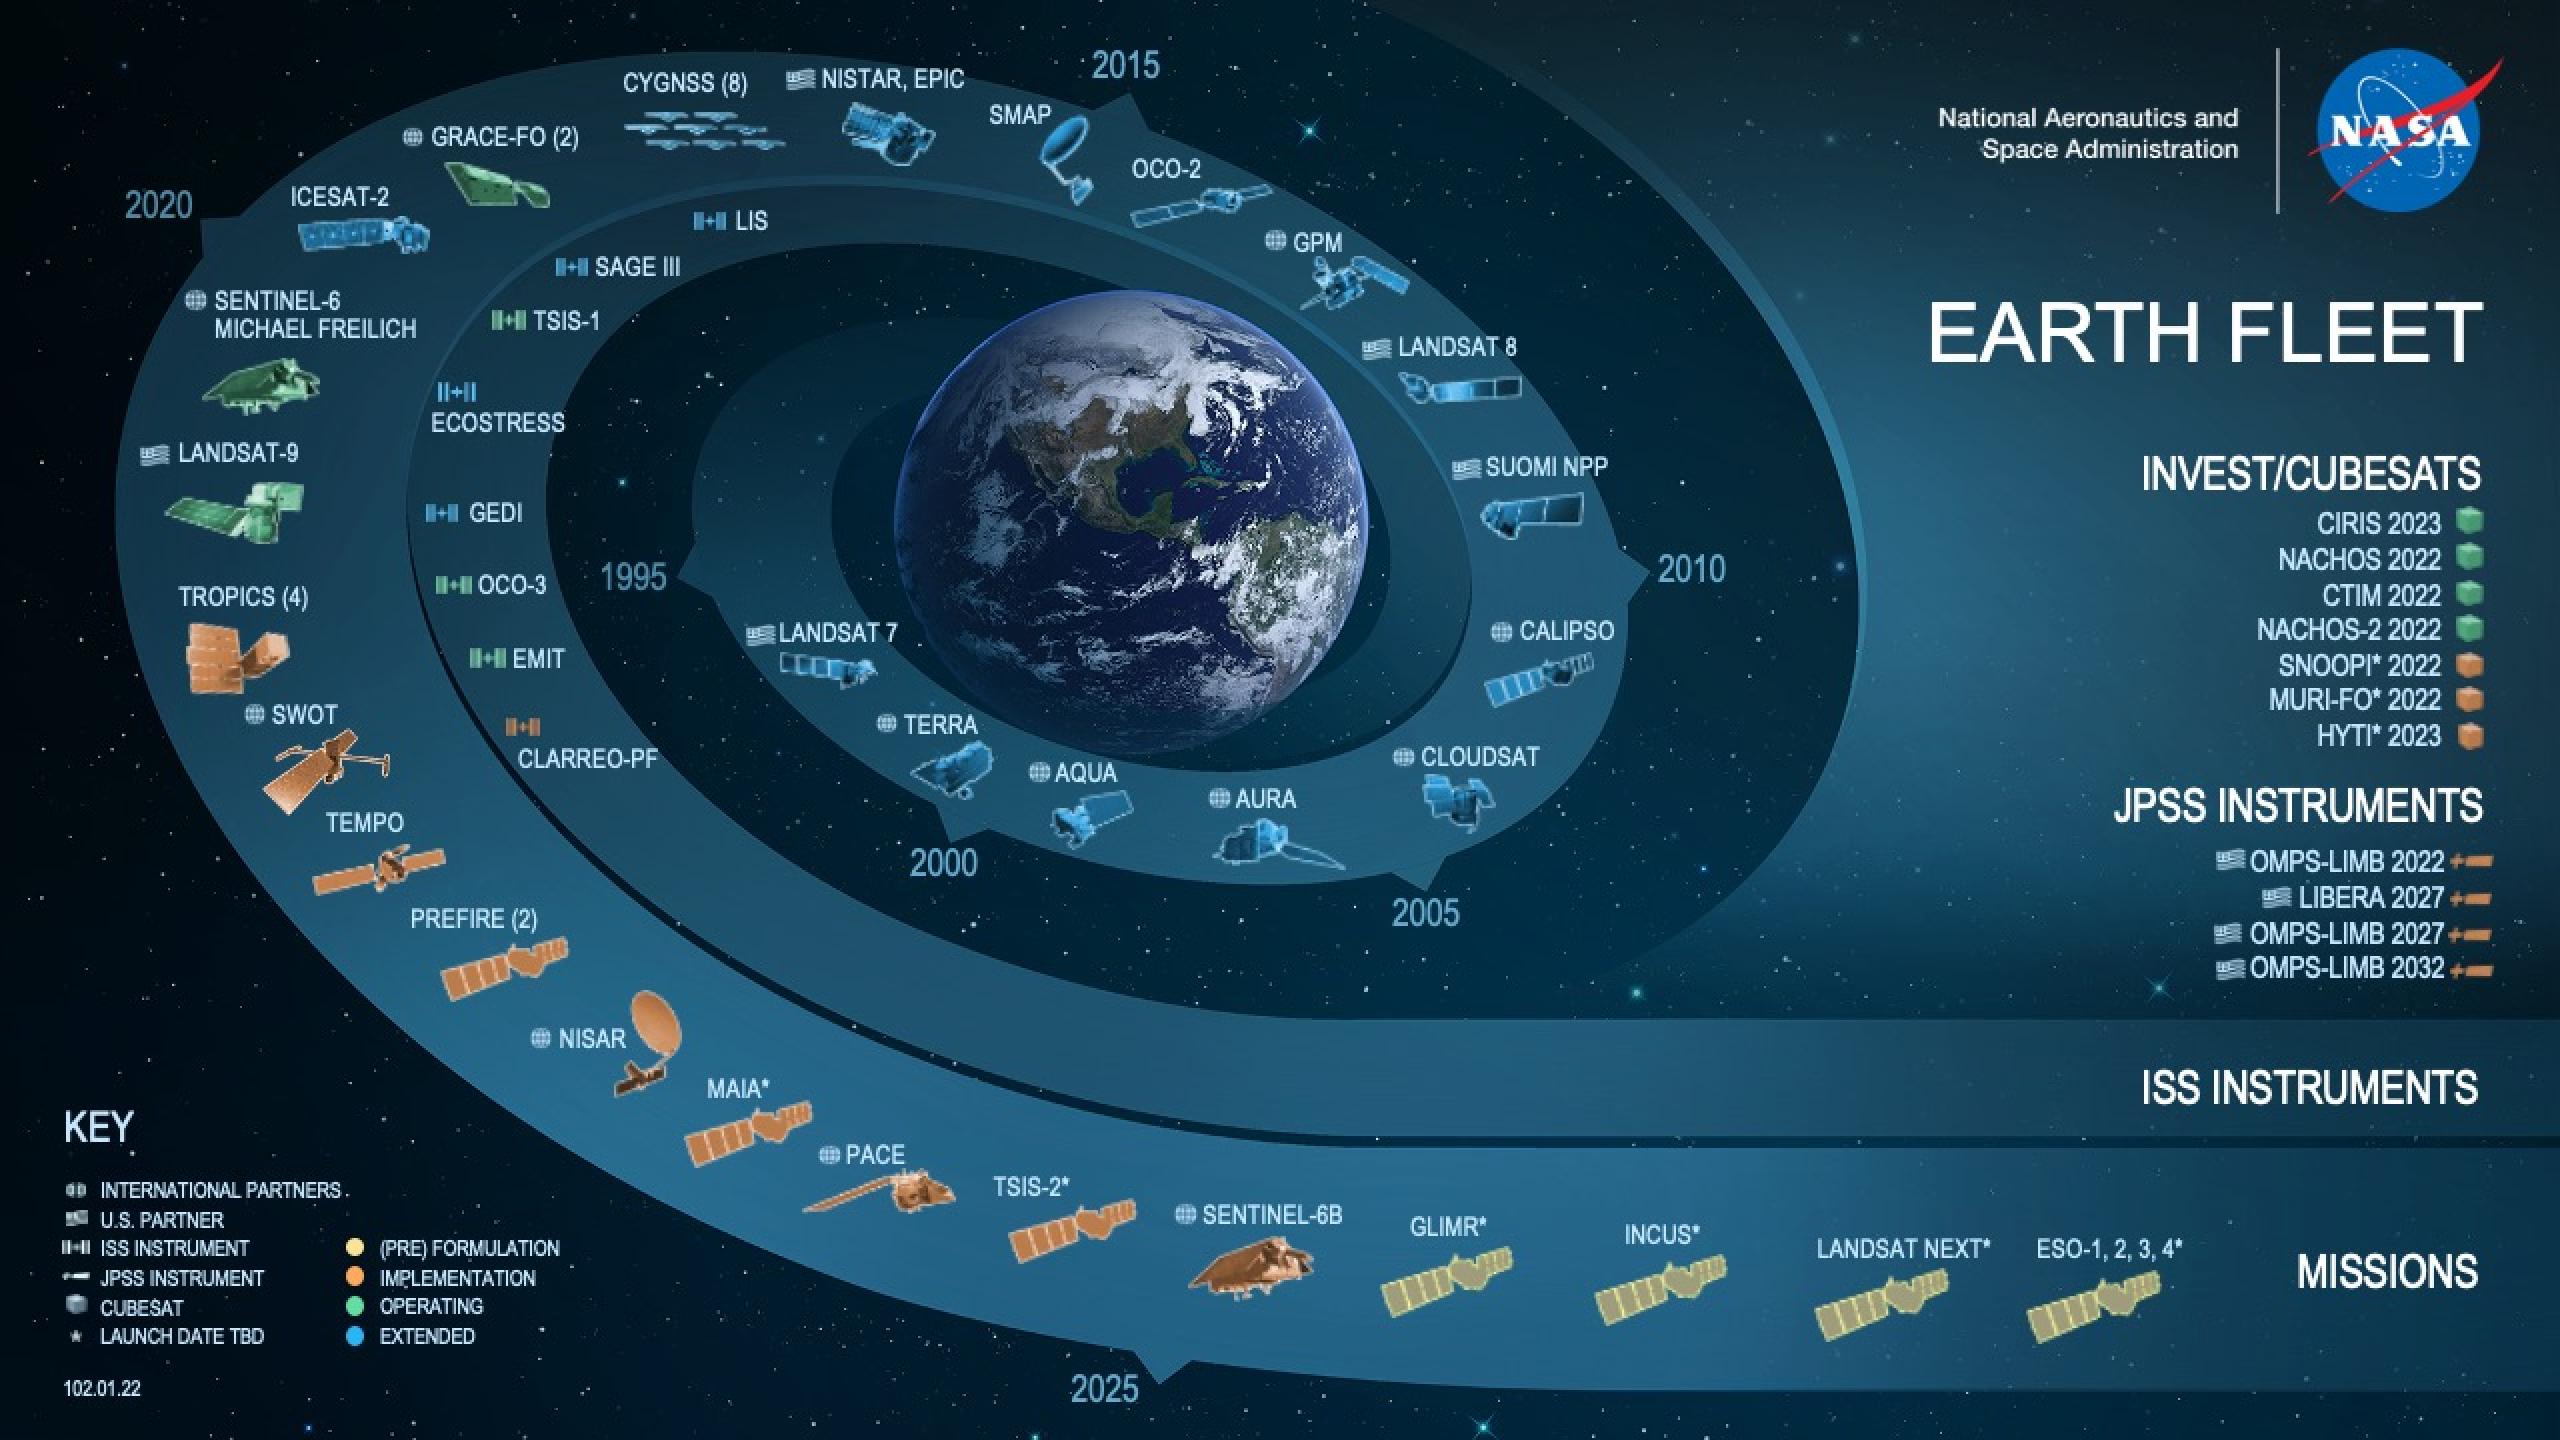 NASA's Earth Fleet